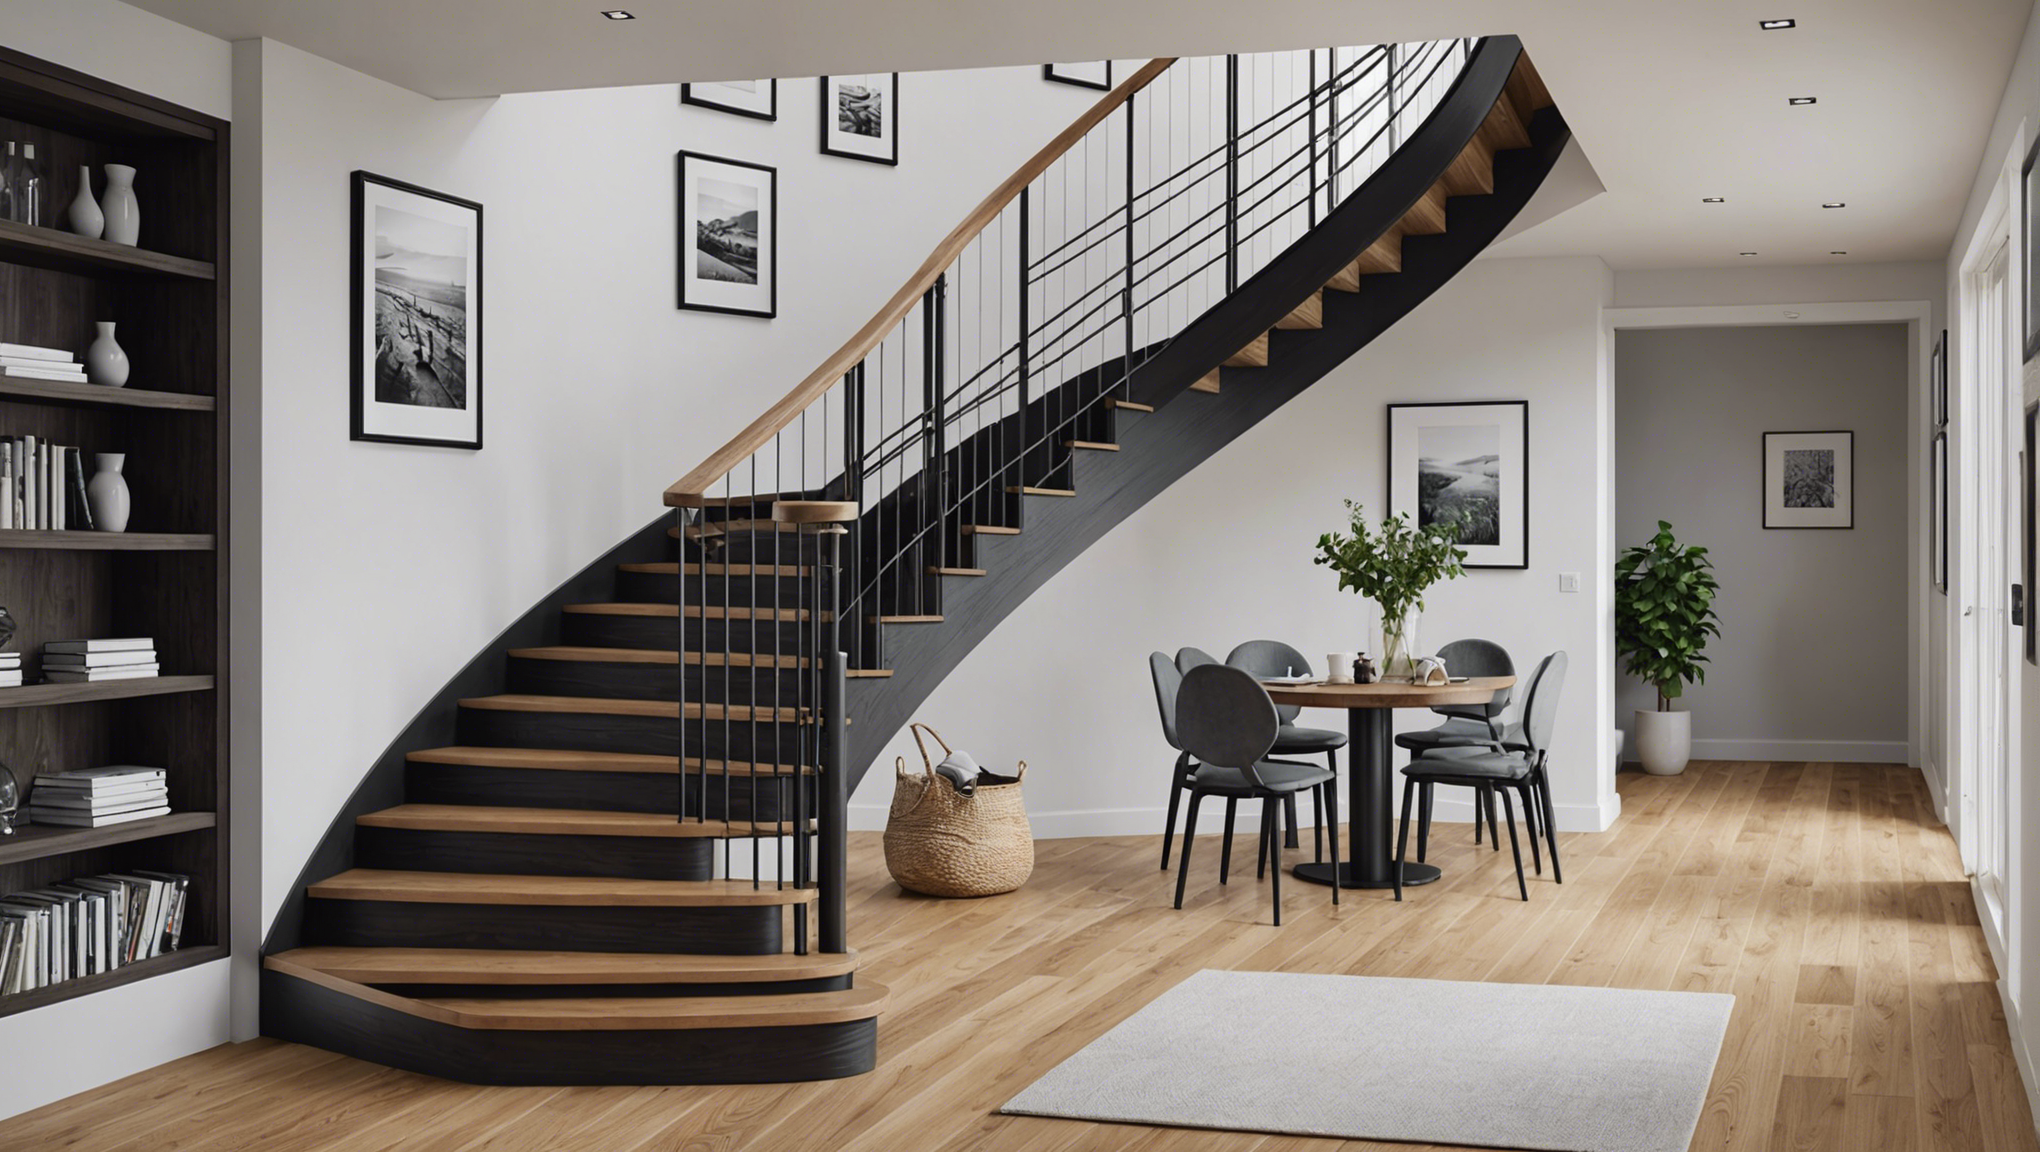 découvrez nos conseils pour bien choisir un escalier quart tournant adapté à votre intérieur. trouvez le modèle qui convient à votre espace et à votre style avec notre guide d'achat.